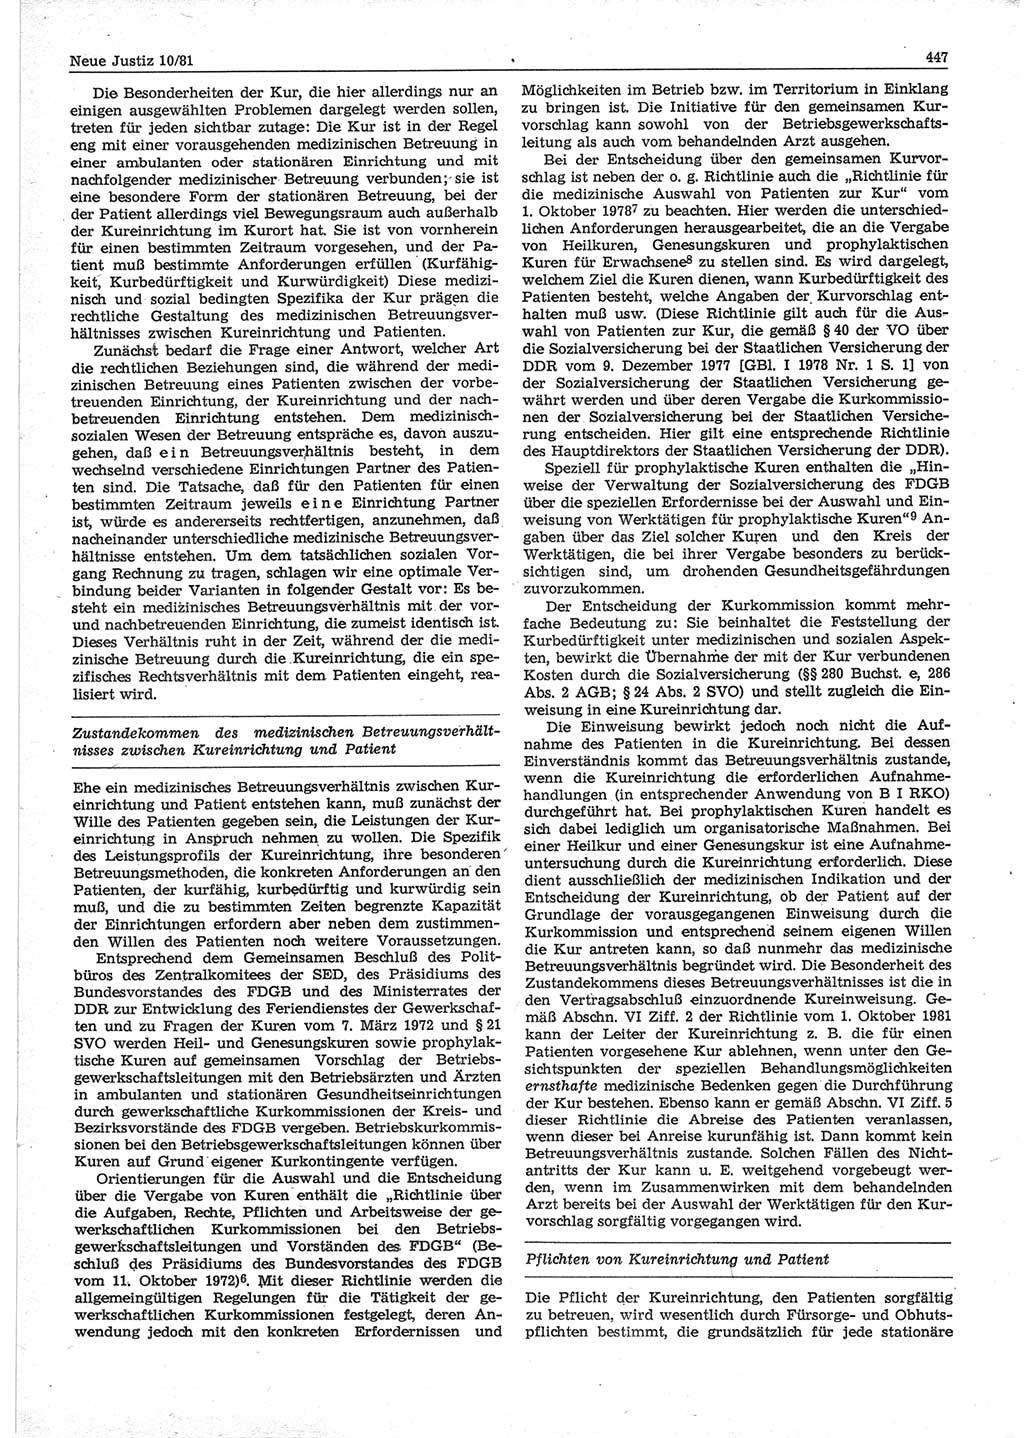 Neue Justiz (NJ), Zeitschrift für sozialistisches Recht und Gesetzlichkeit [Deutsche Demokratische Republik (DDR)], 35. Jahrgang 1981, Seite 447 (NJ DDR 1981, S. 447)